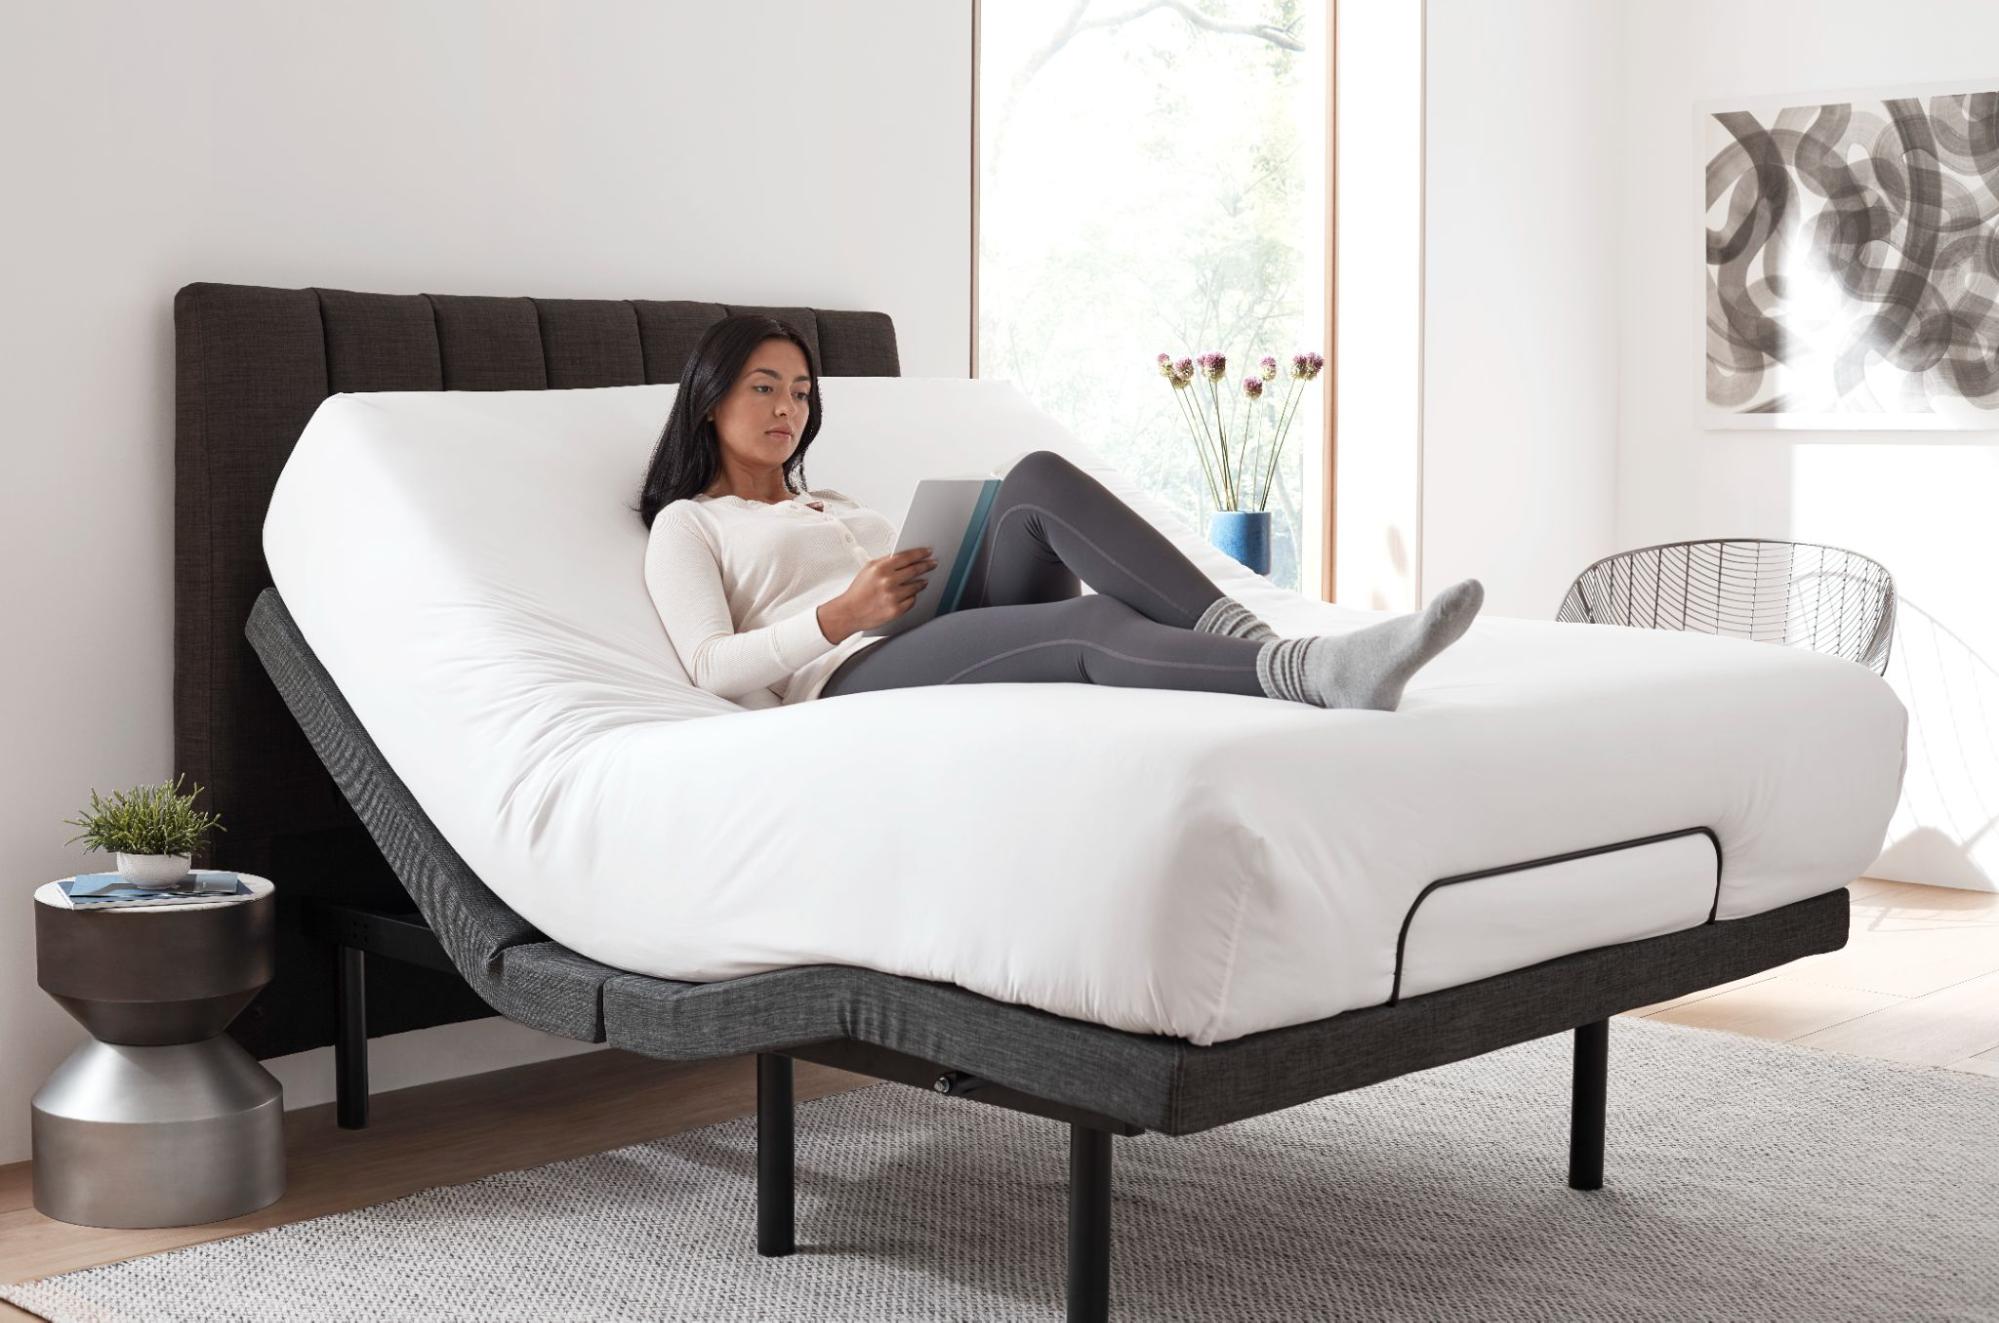 Adjustable Bed Benefits Of The Sleeptone Adjustable Bed